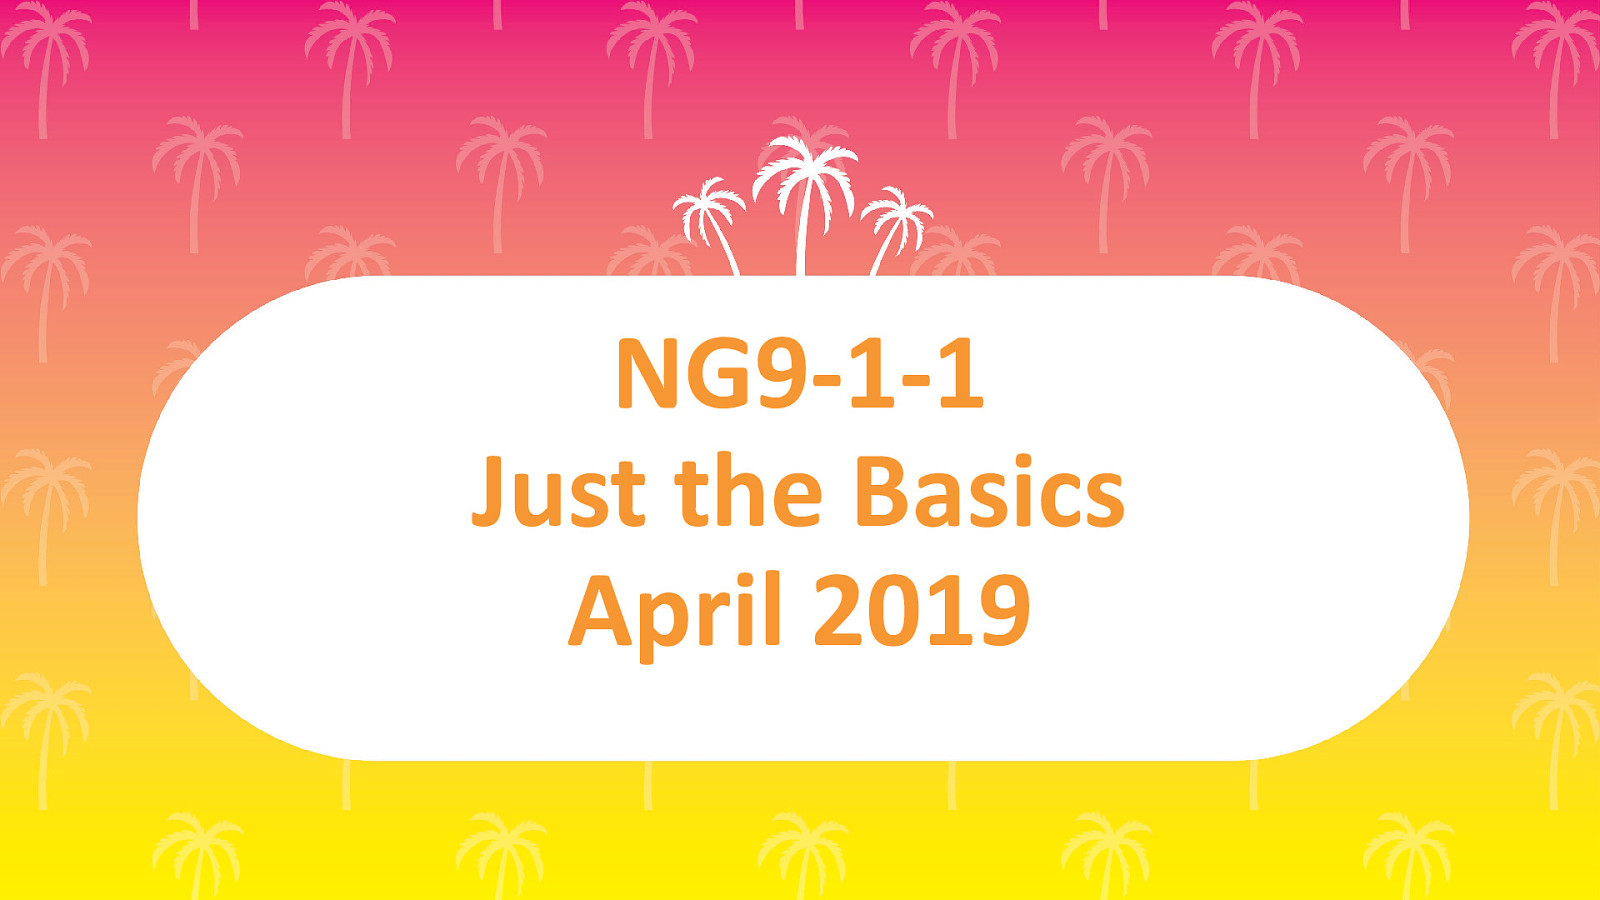 NG9-1-1 the Basics